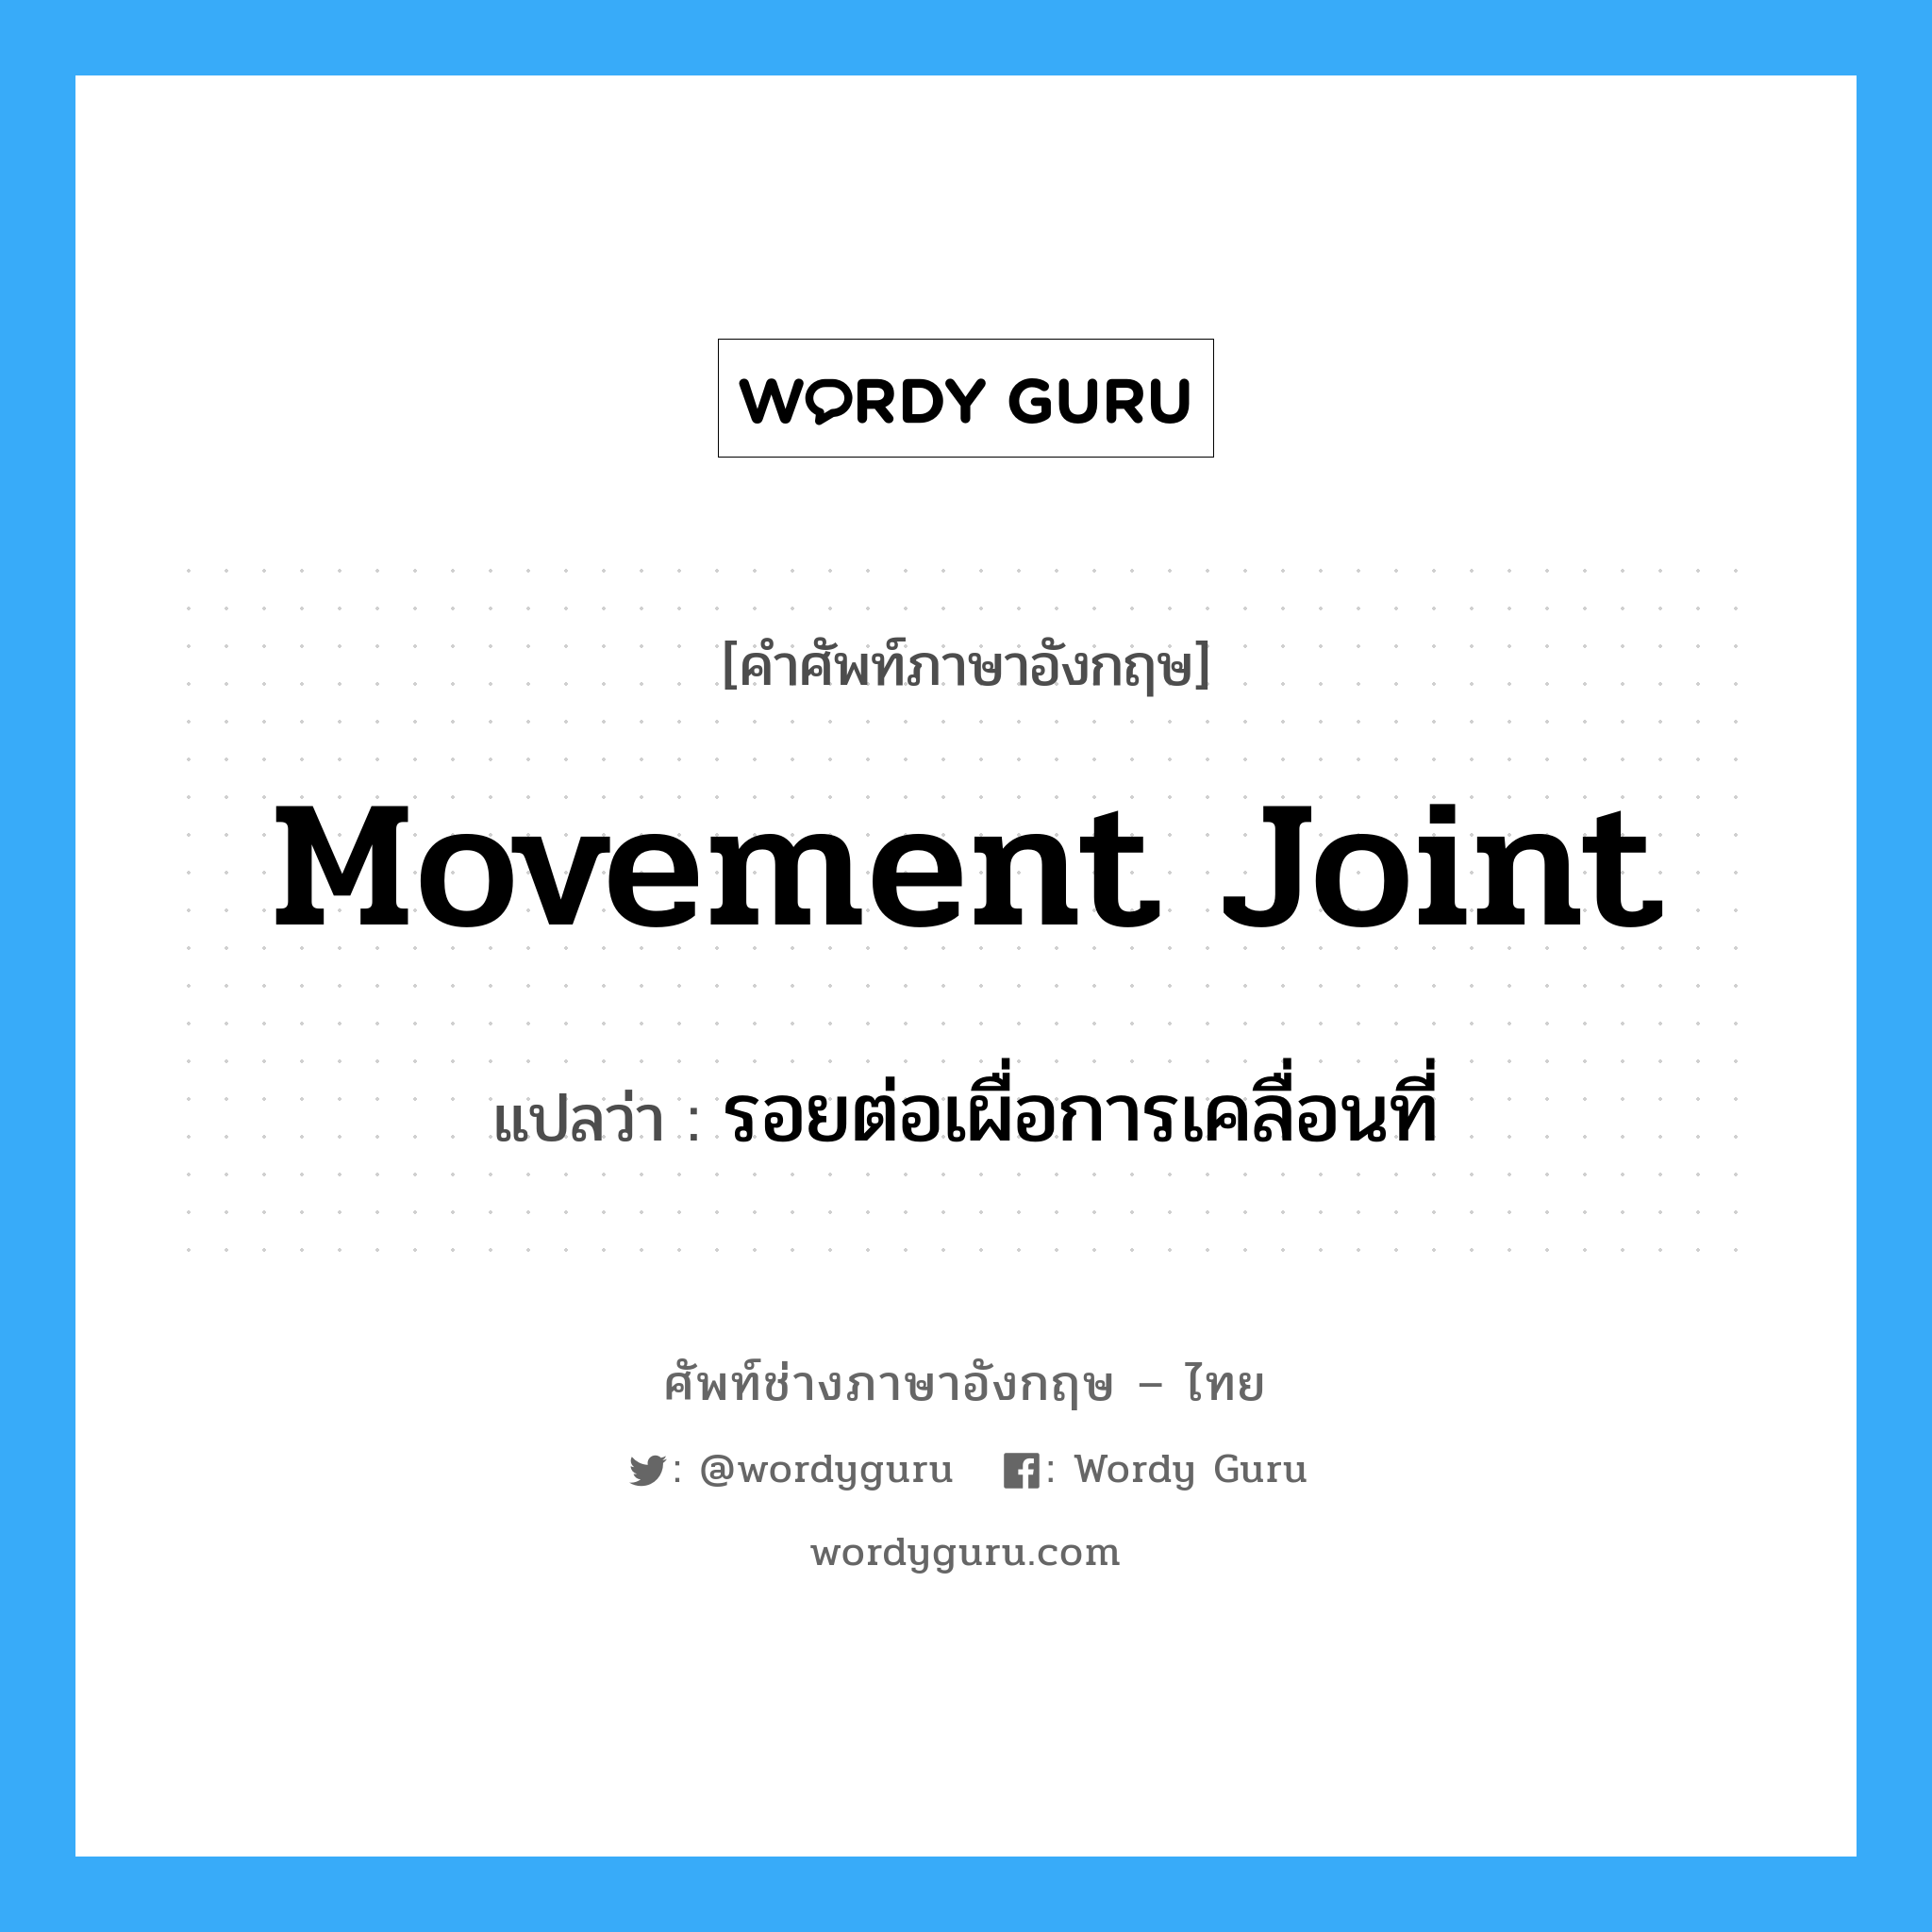 รอยต่อเผื่อการเคลื่อนที่ ภาษาอังกฤษ?, คำศัพท์ช่างภาษาอังกฤษ - ไทย รอยต่อเผื่อการเคลื่อนที่ คำศัพท์ภาษาอังกฤษ รอยต่อเผื่อการเคลื่อนที่ แปลว่า movement joint